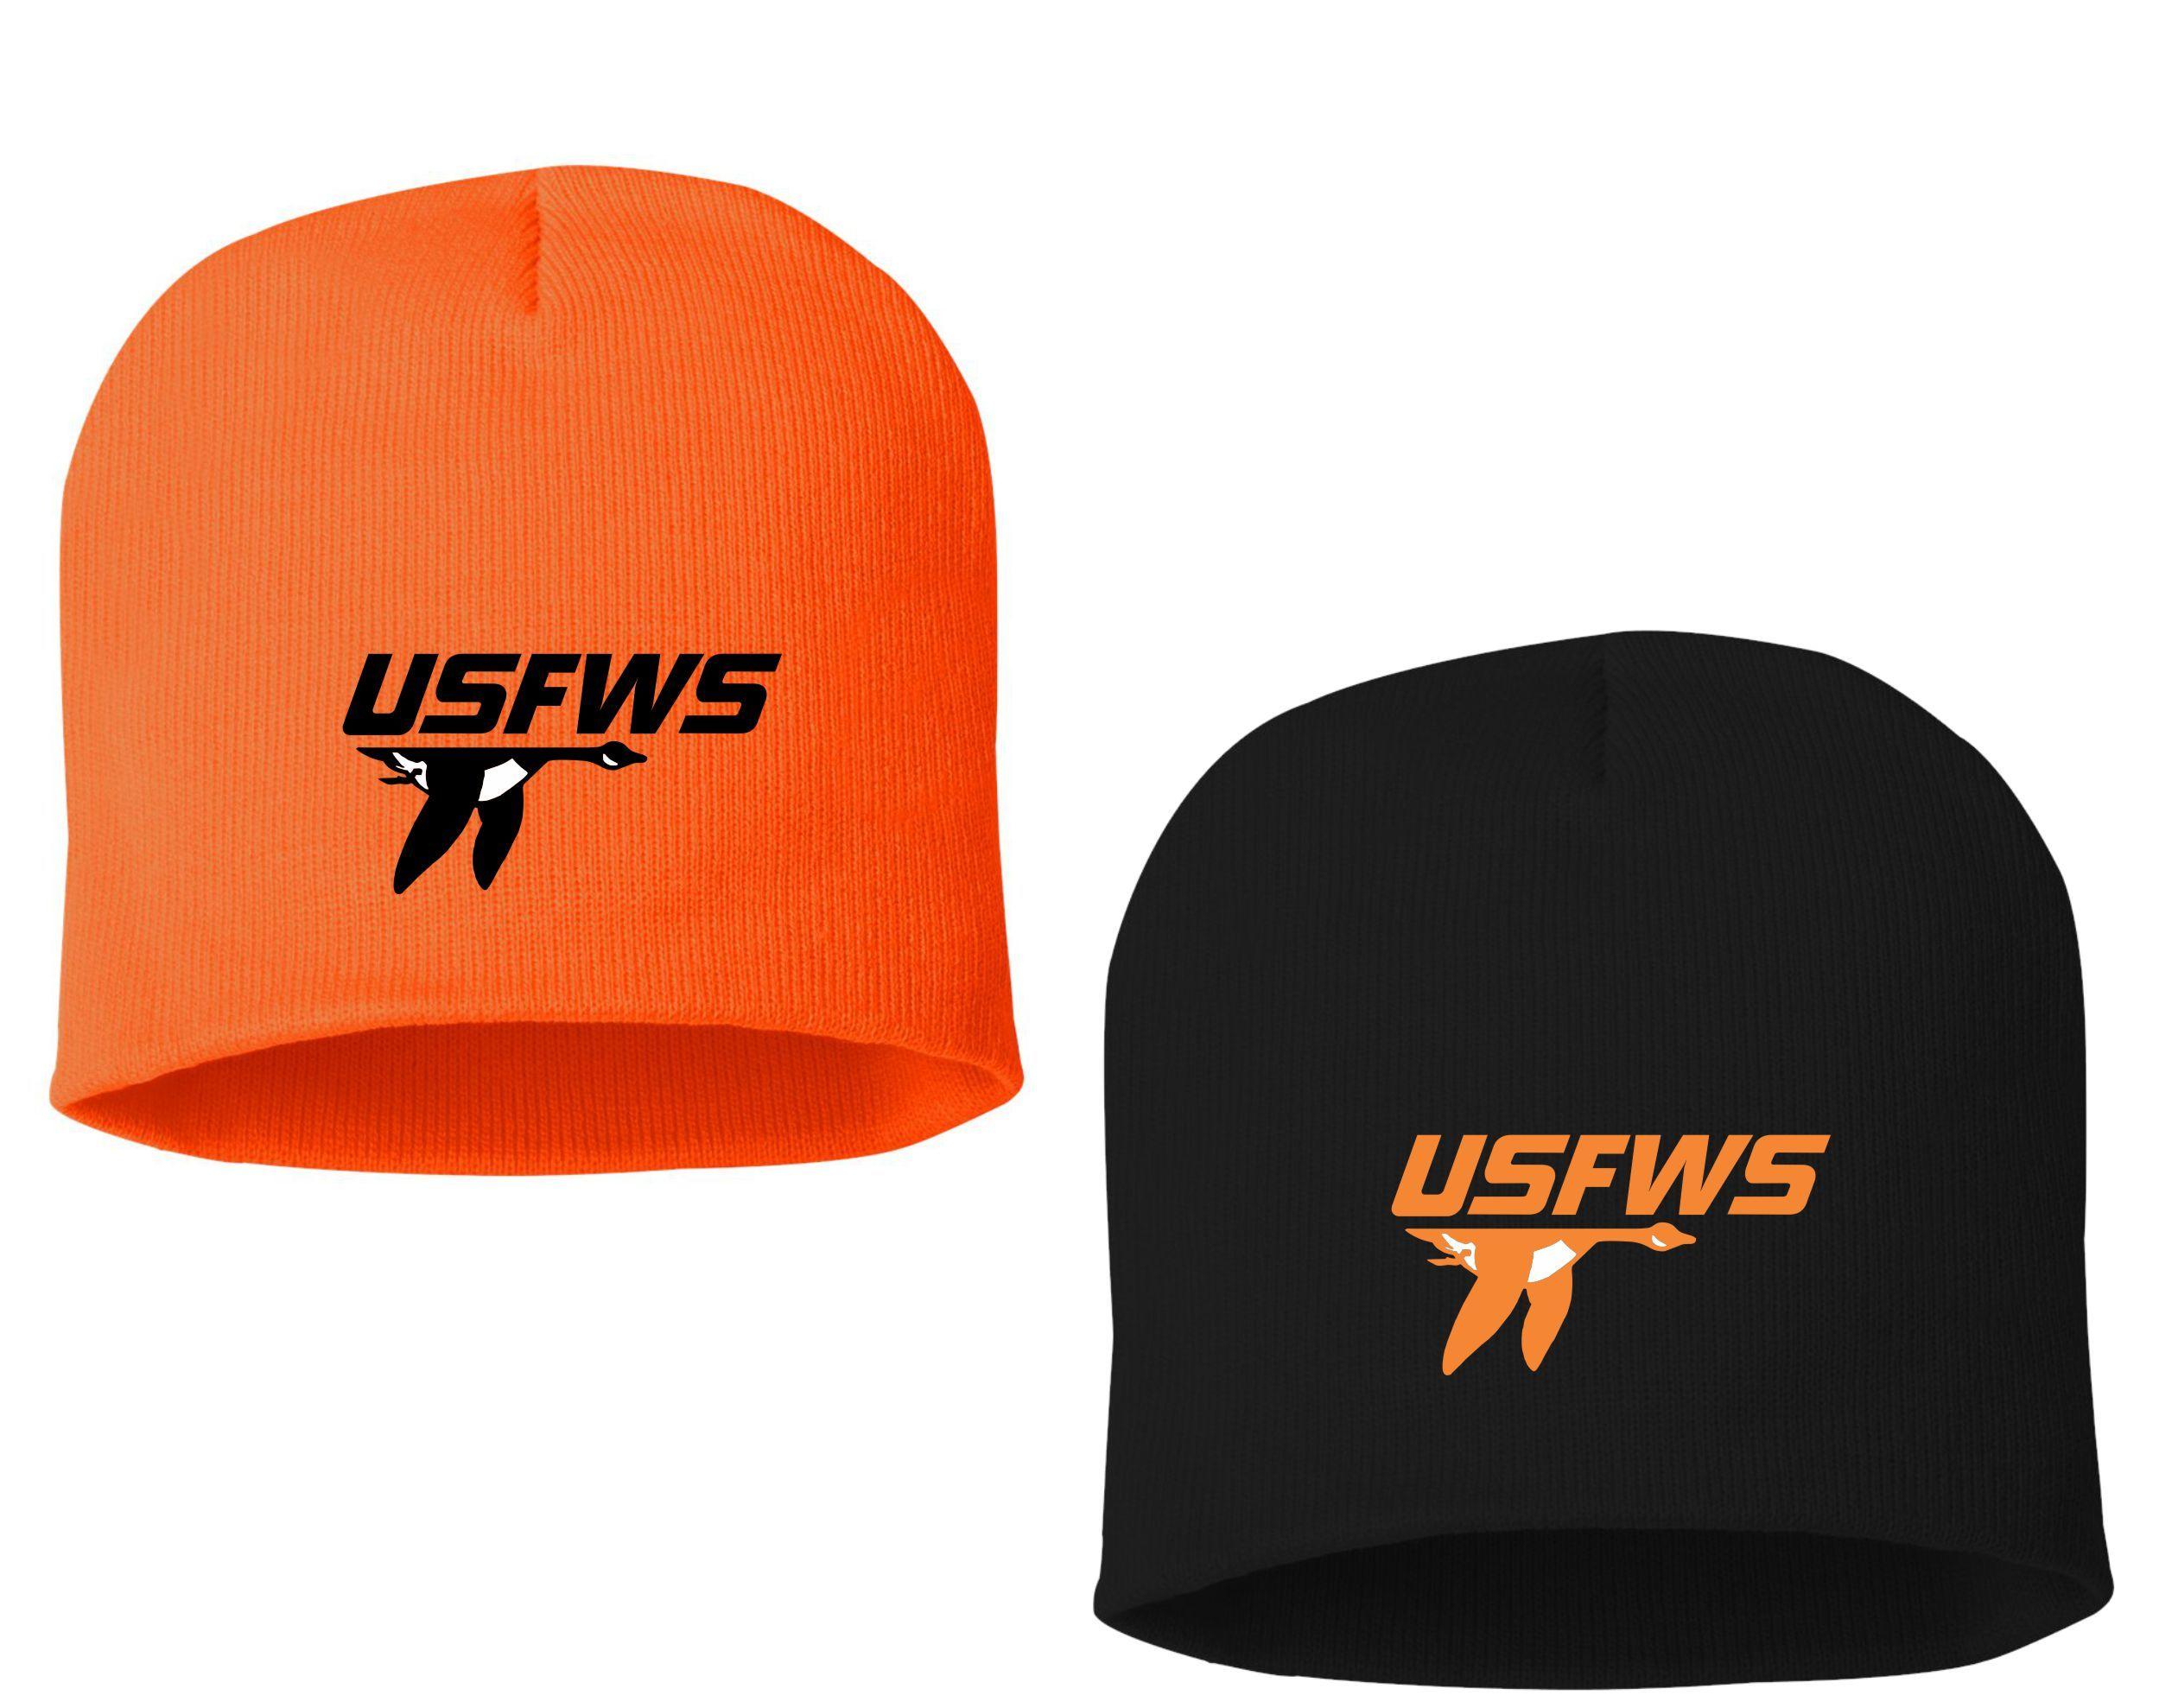 USFWS Logo - USFWS. Action Safety Apparel